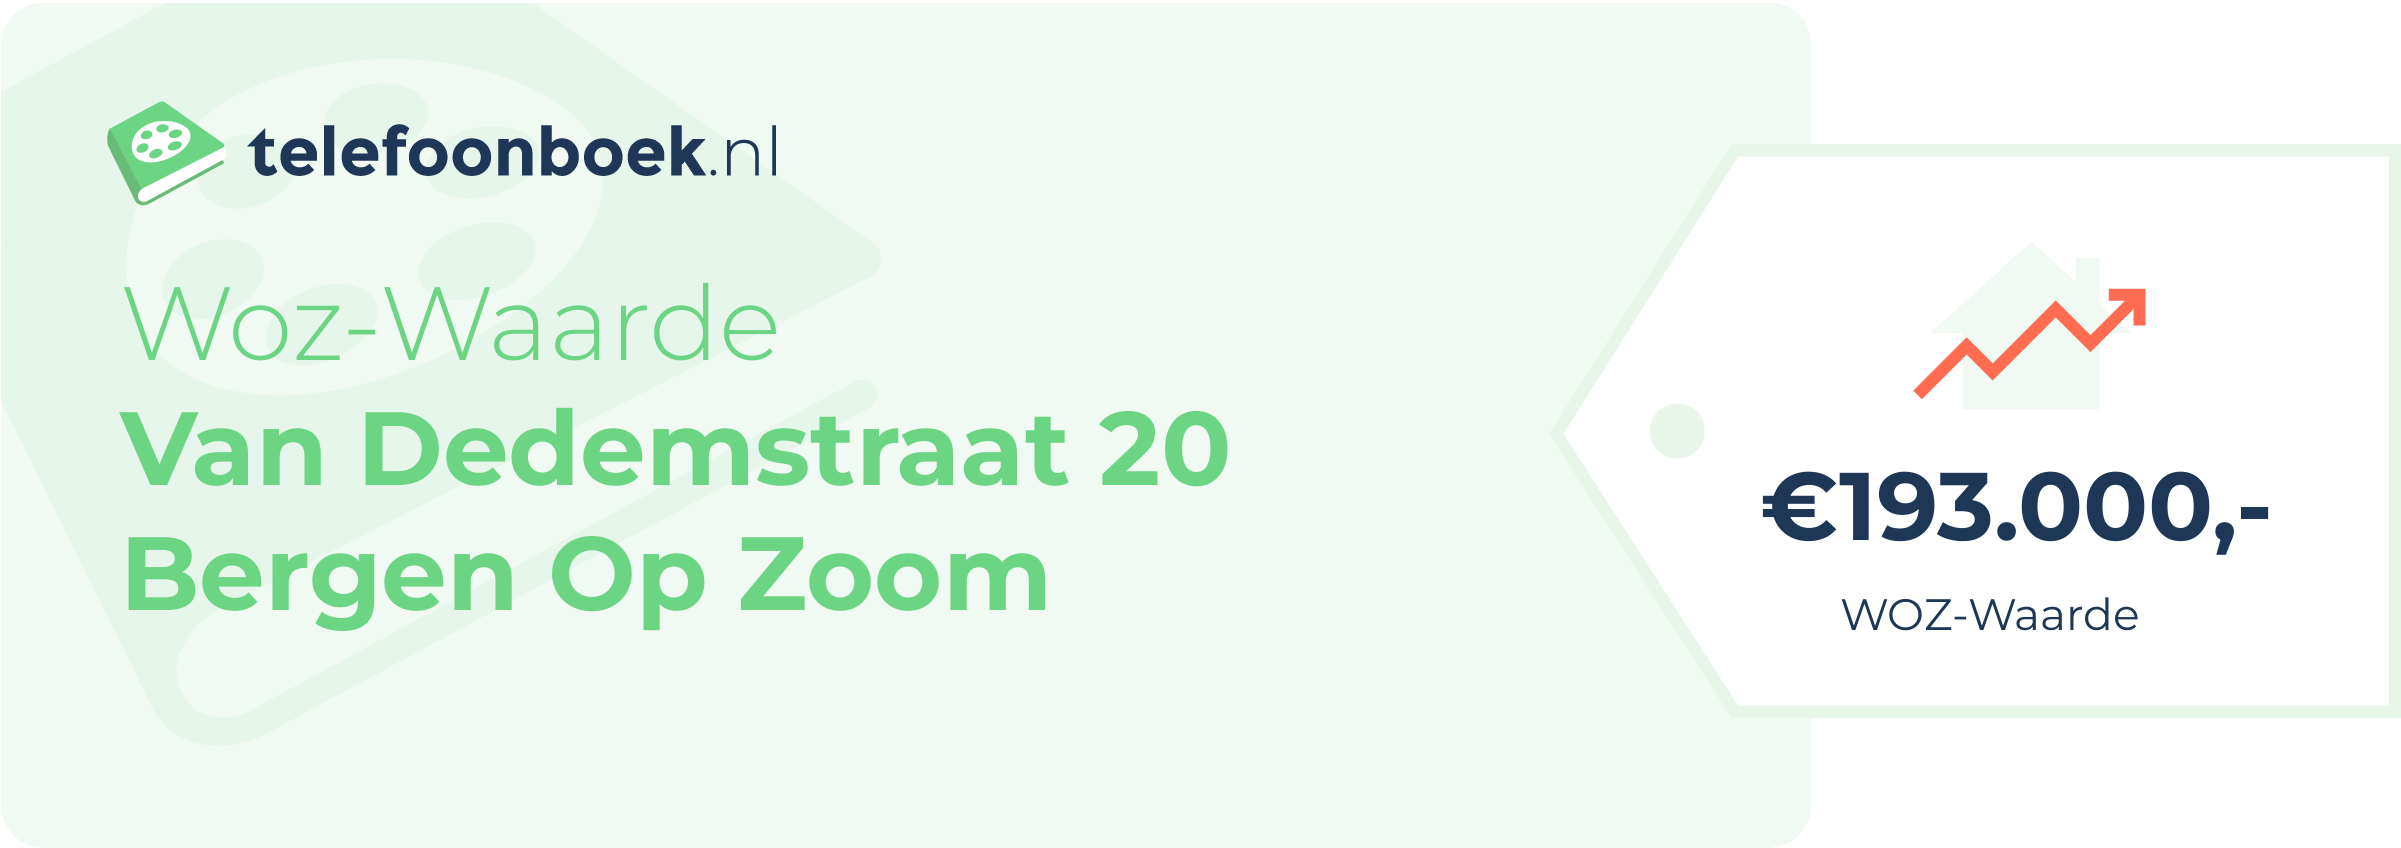 WOZ-waarde Van Dedemstraat 20 Bergen Op Zoom